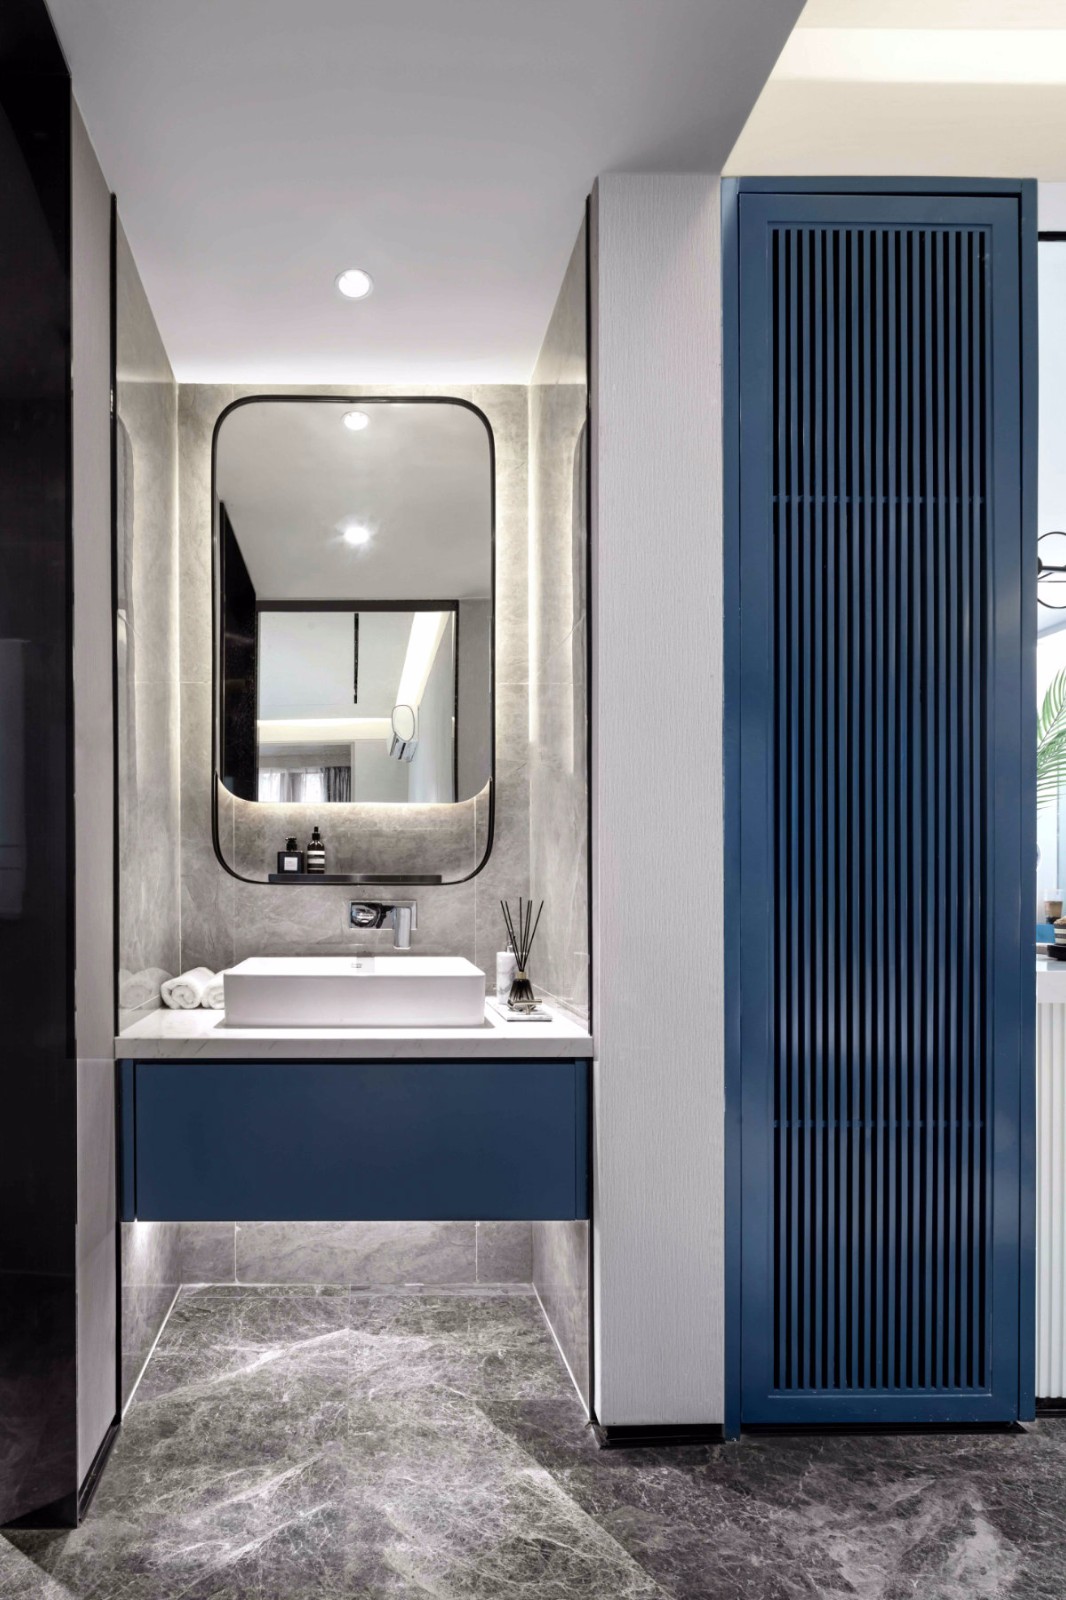 現代摩登風格室內設計家裝案例-衛生間